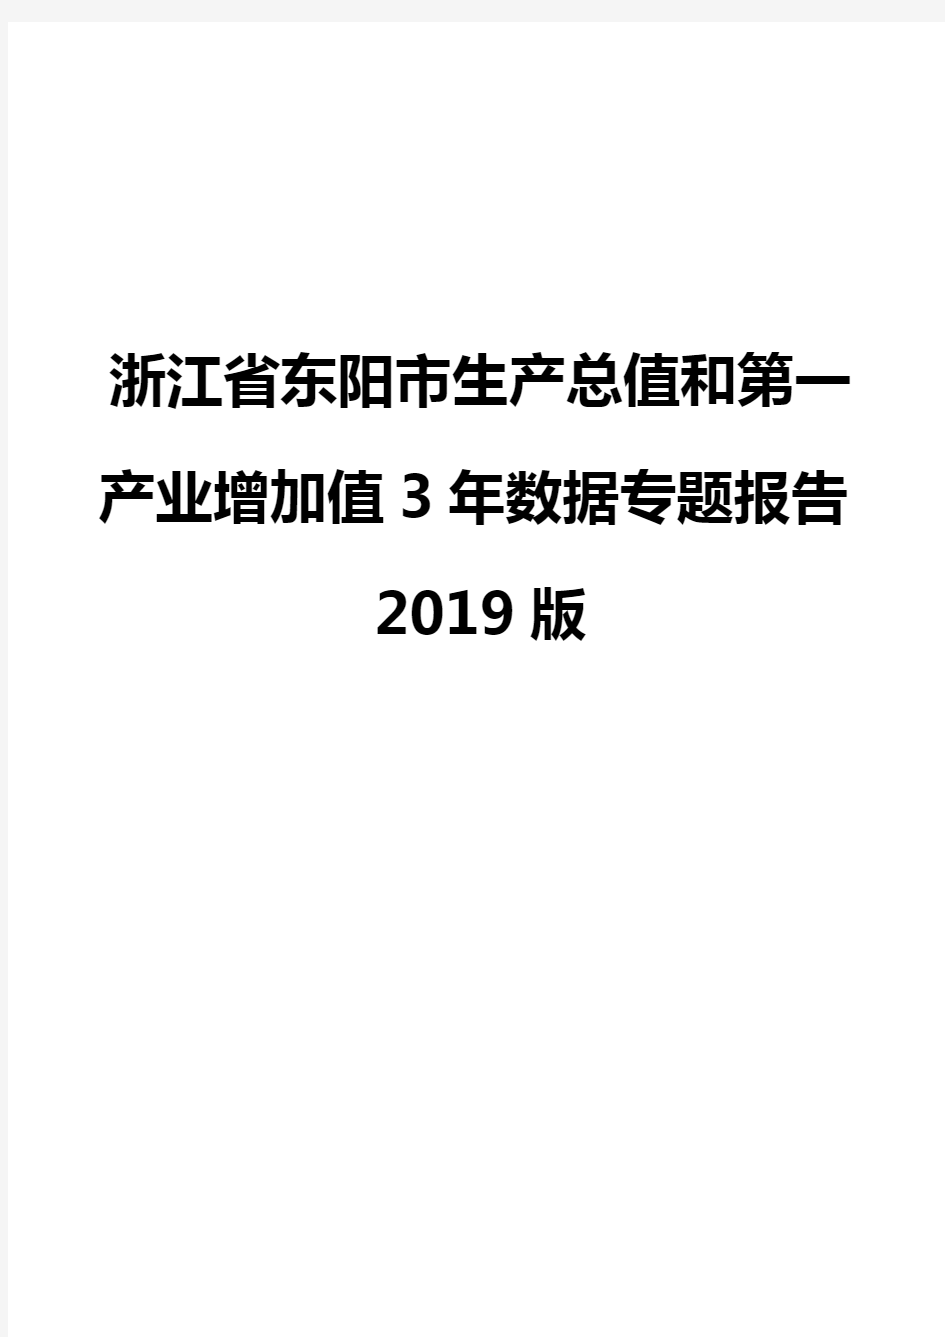 浙江省东阳市生产总值和第一产业增加值3年数据专题报告2019版